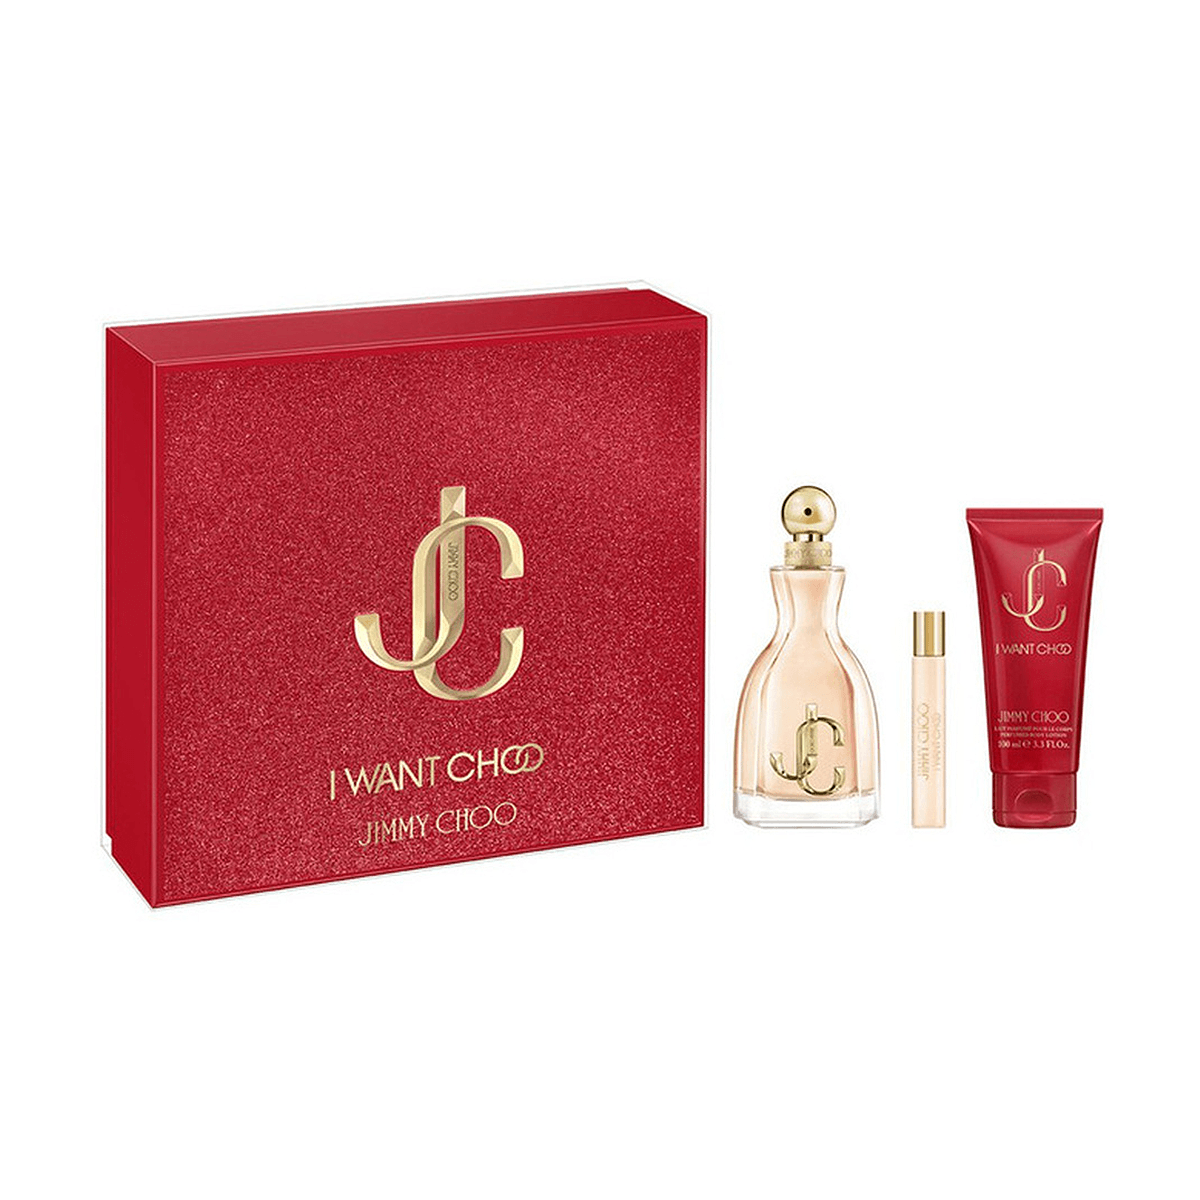 Jimmy Choo I Want Choo Deluxe Gift Set | My Perfume Shop Australia